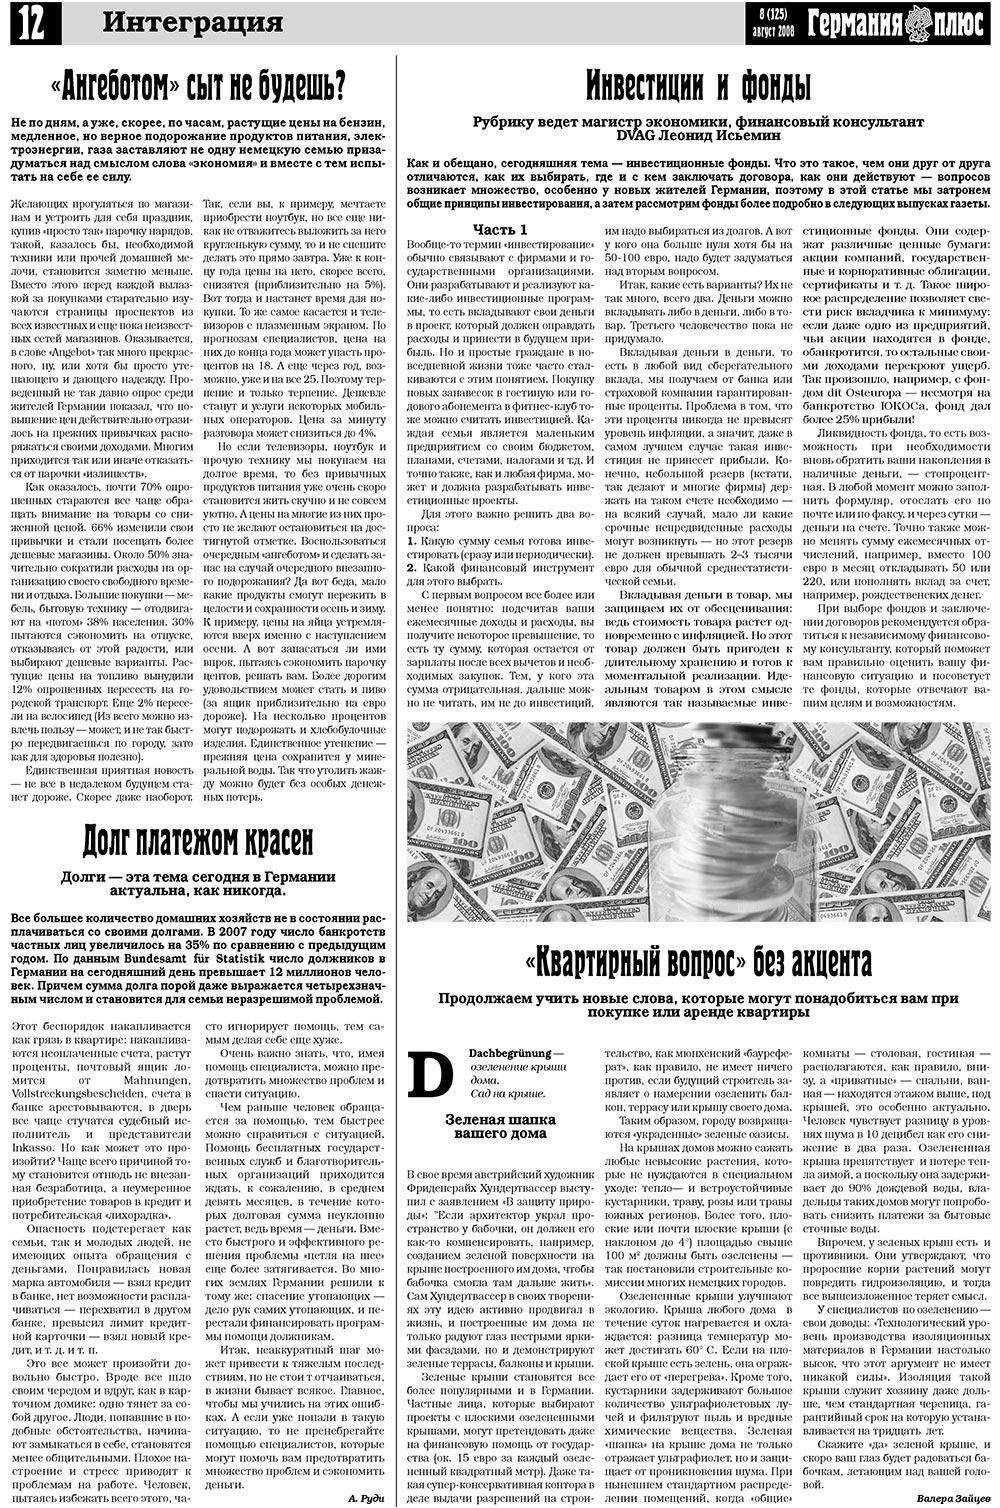 Германия плюс (газета). 2008 год, номер 8, стр. 16